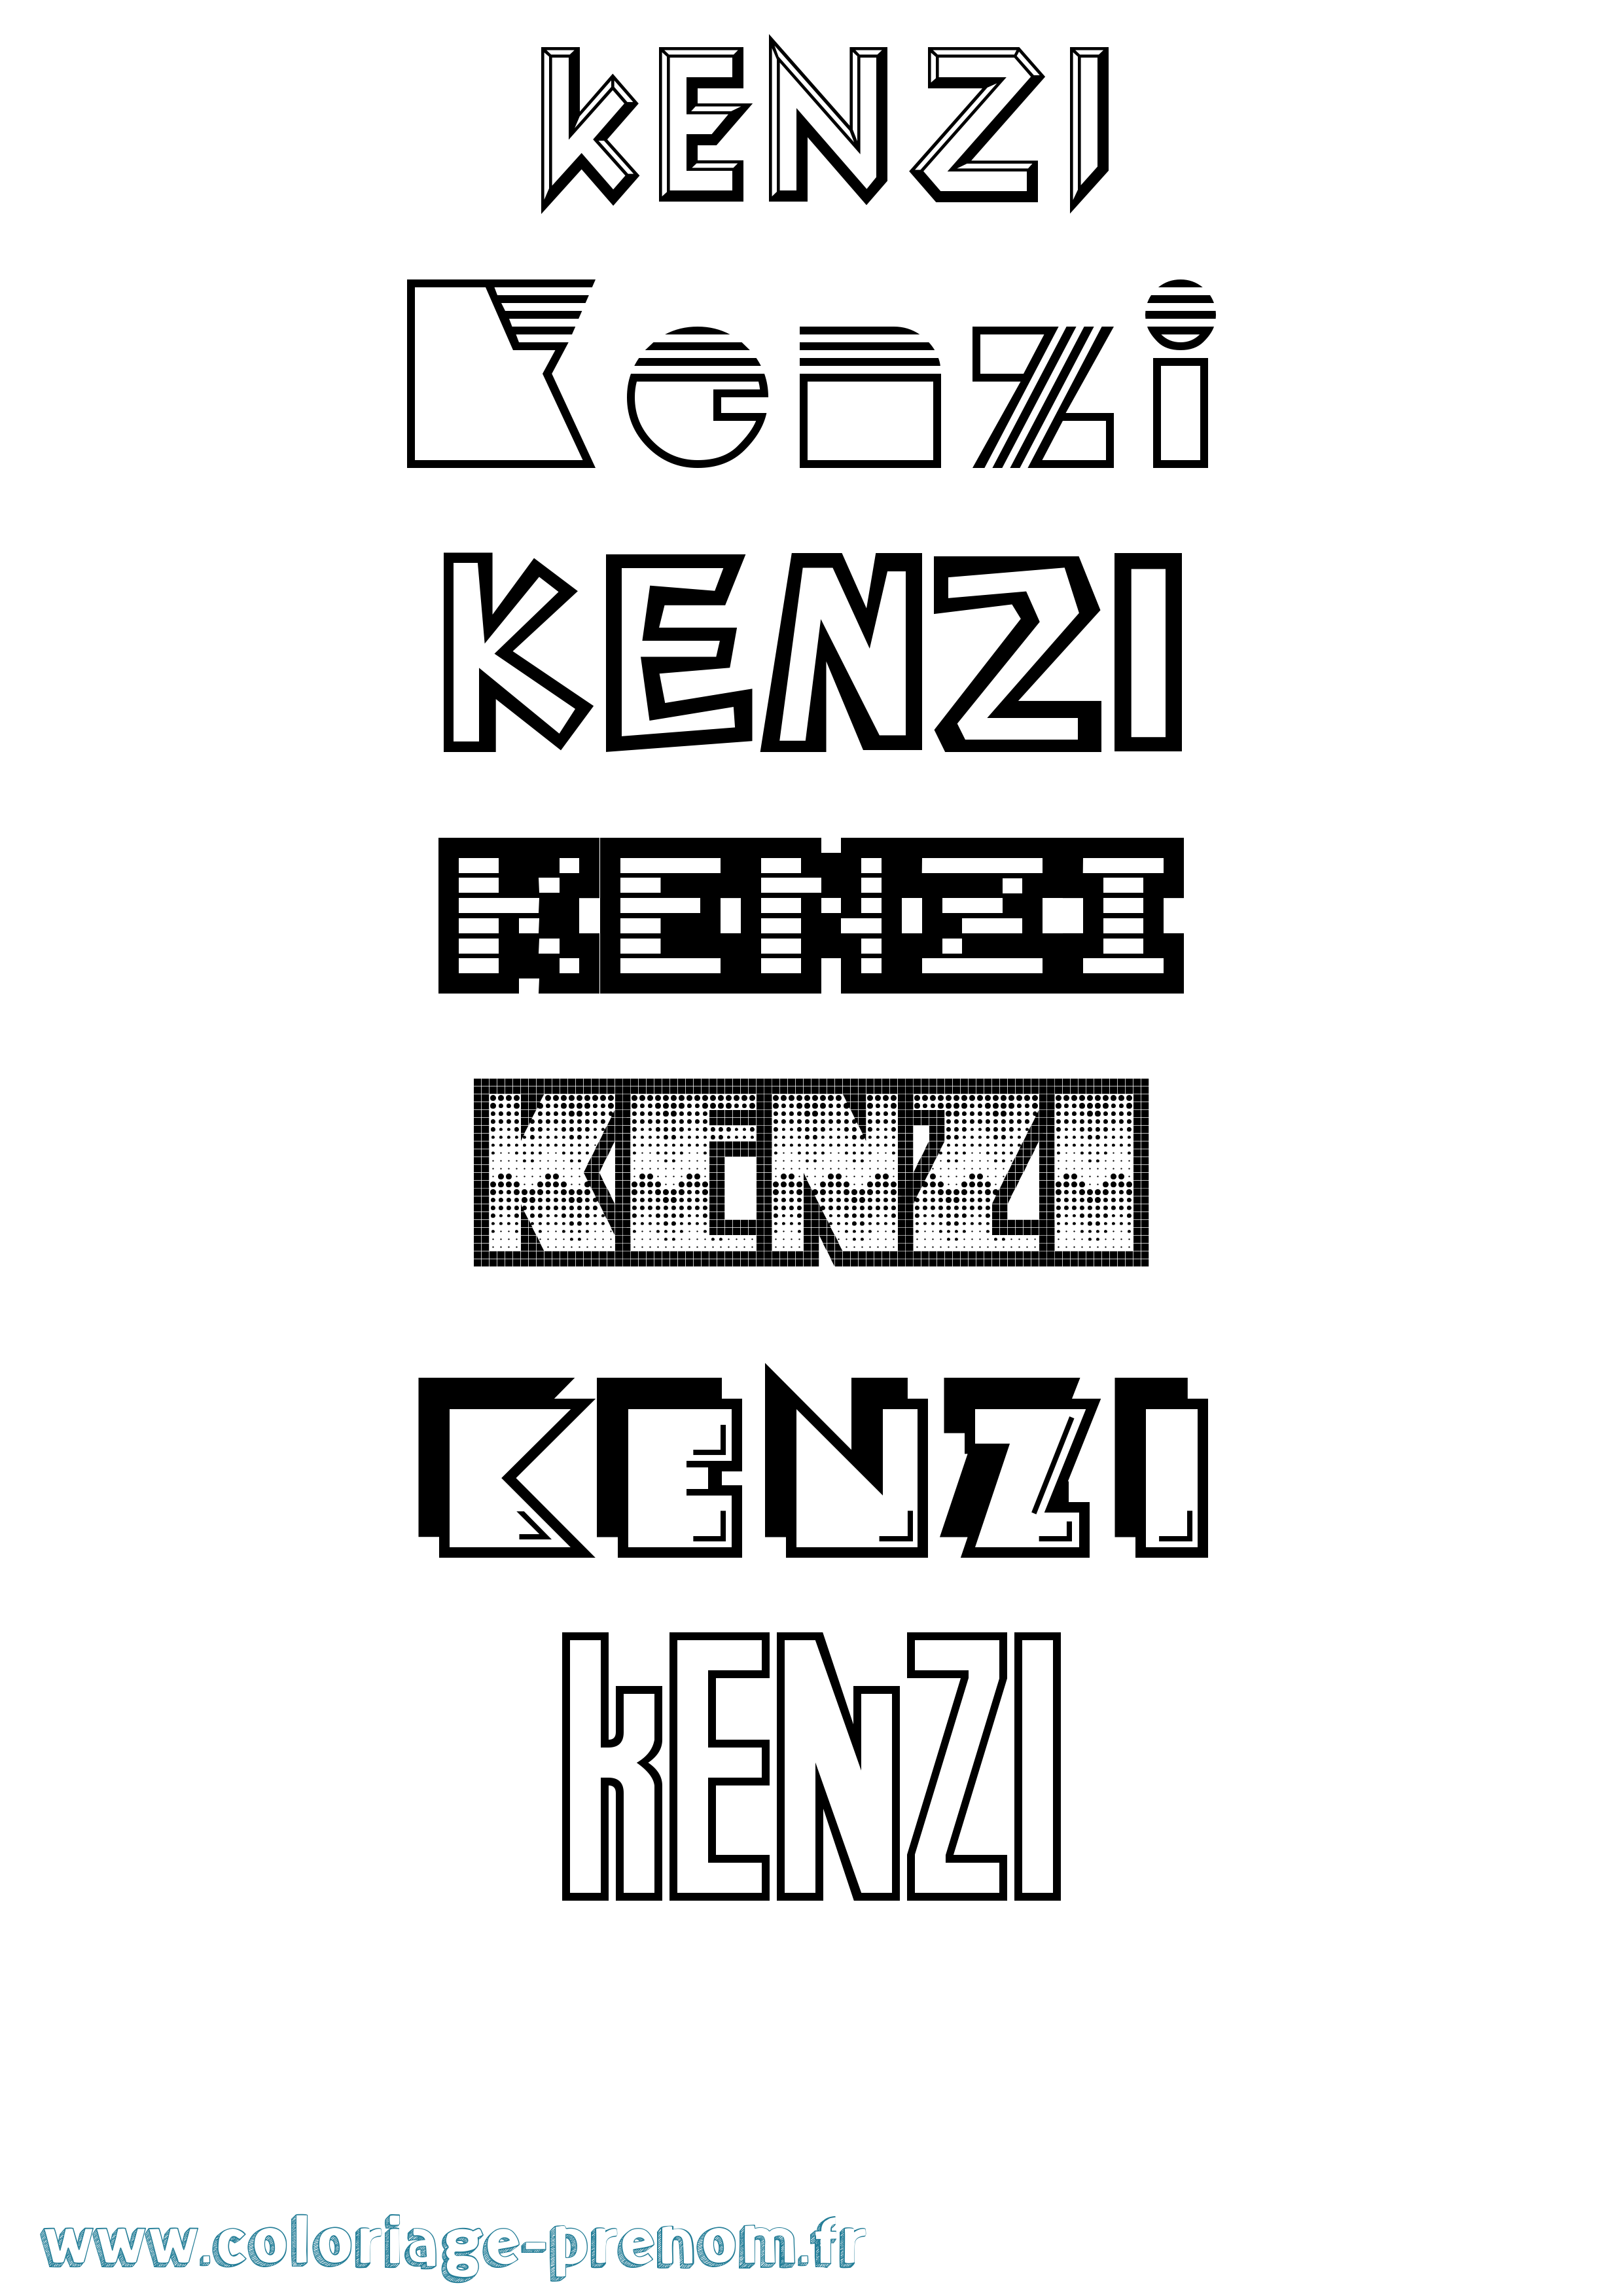 Coloriage prénom Kenzi Jeux Vidéos